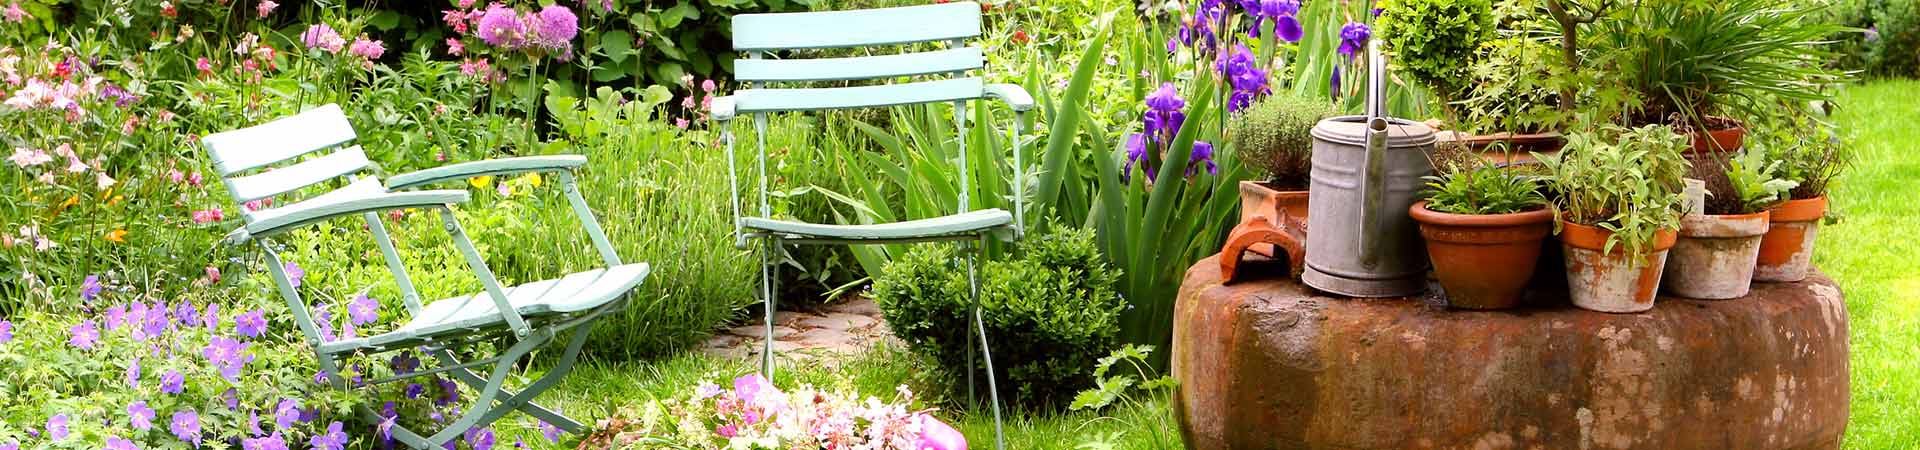 Gartenstühle in einem schönen Garten